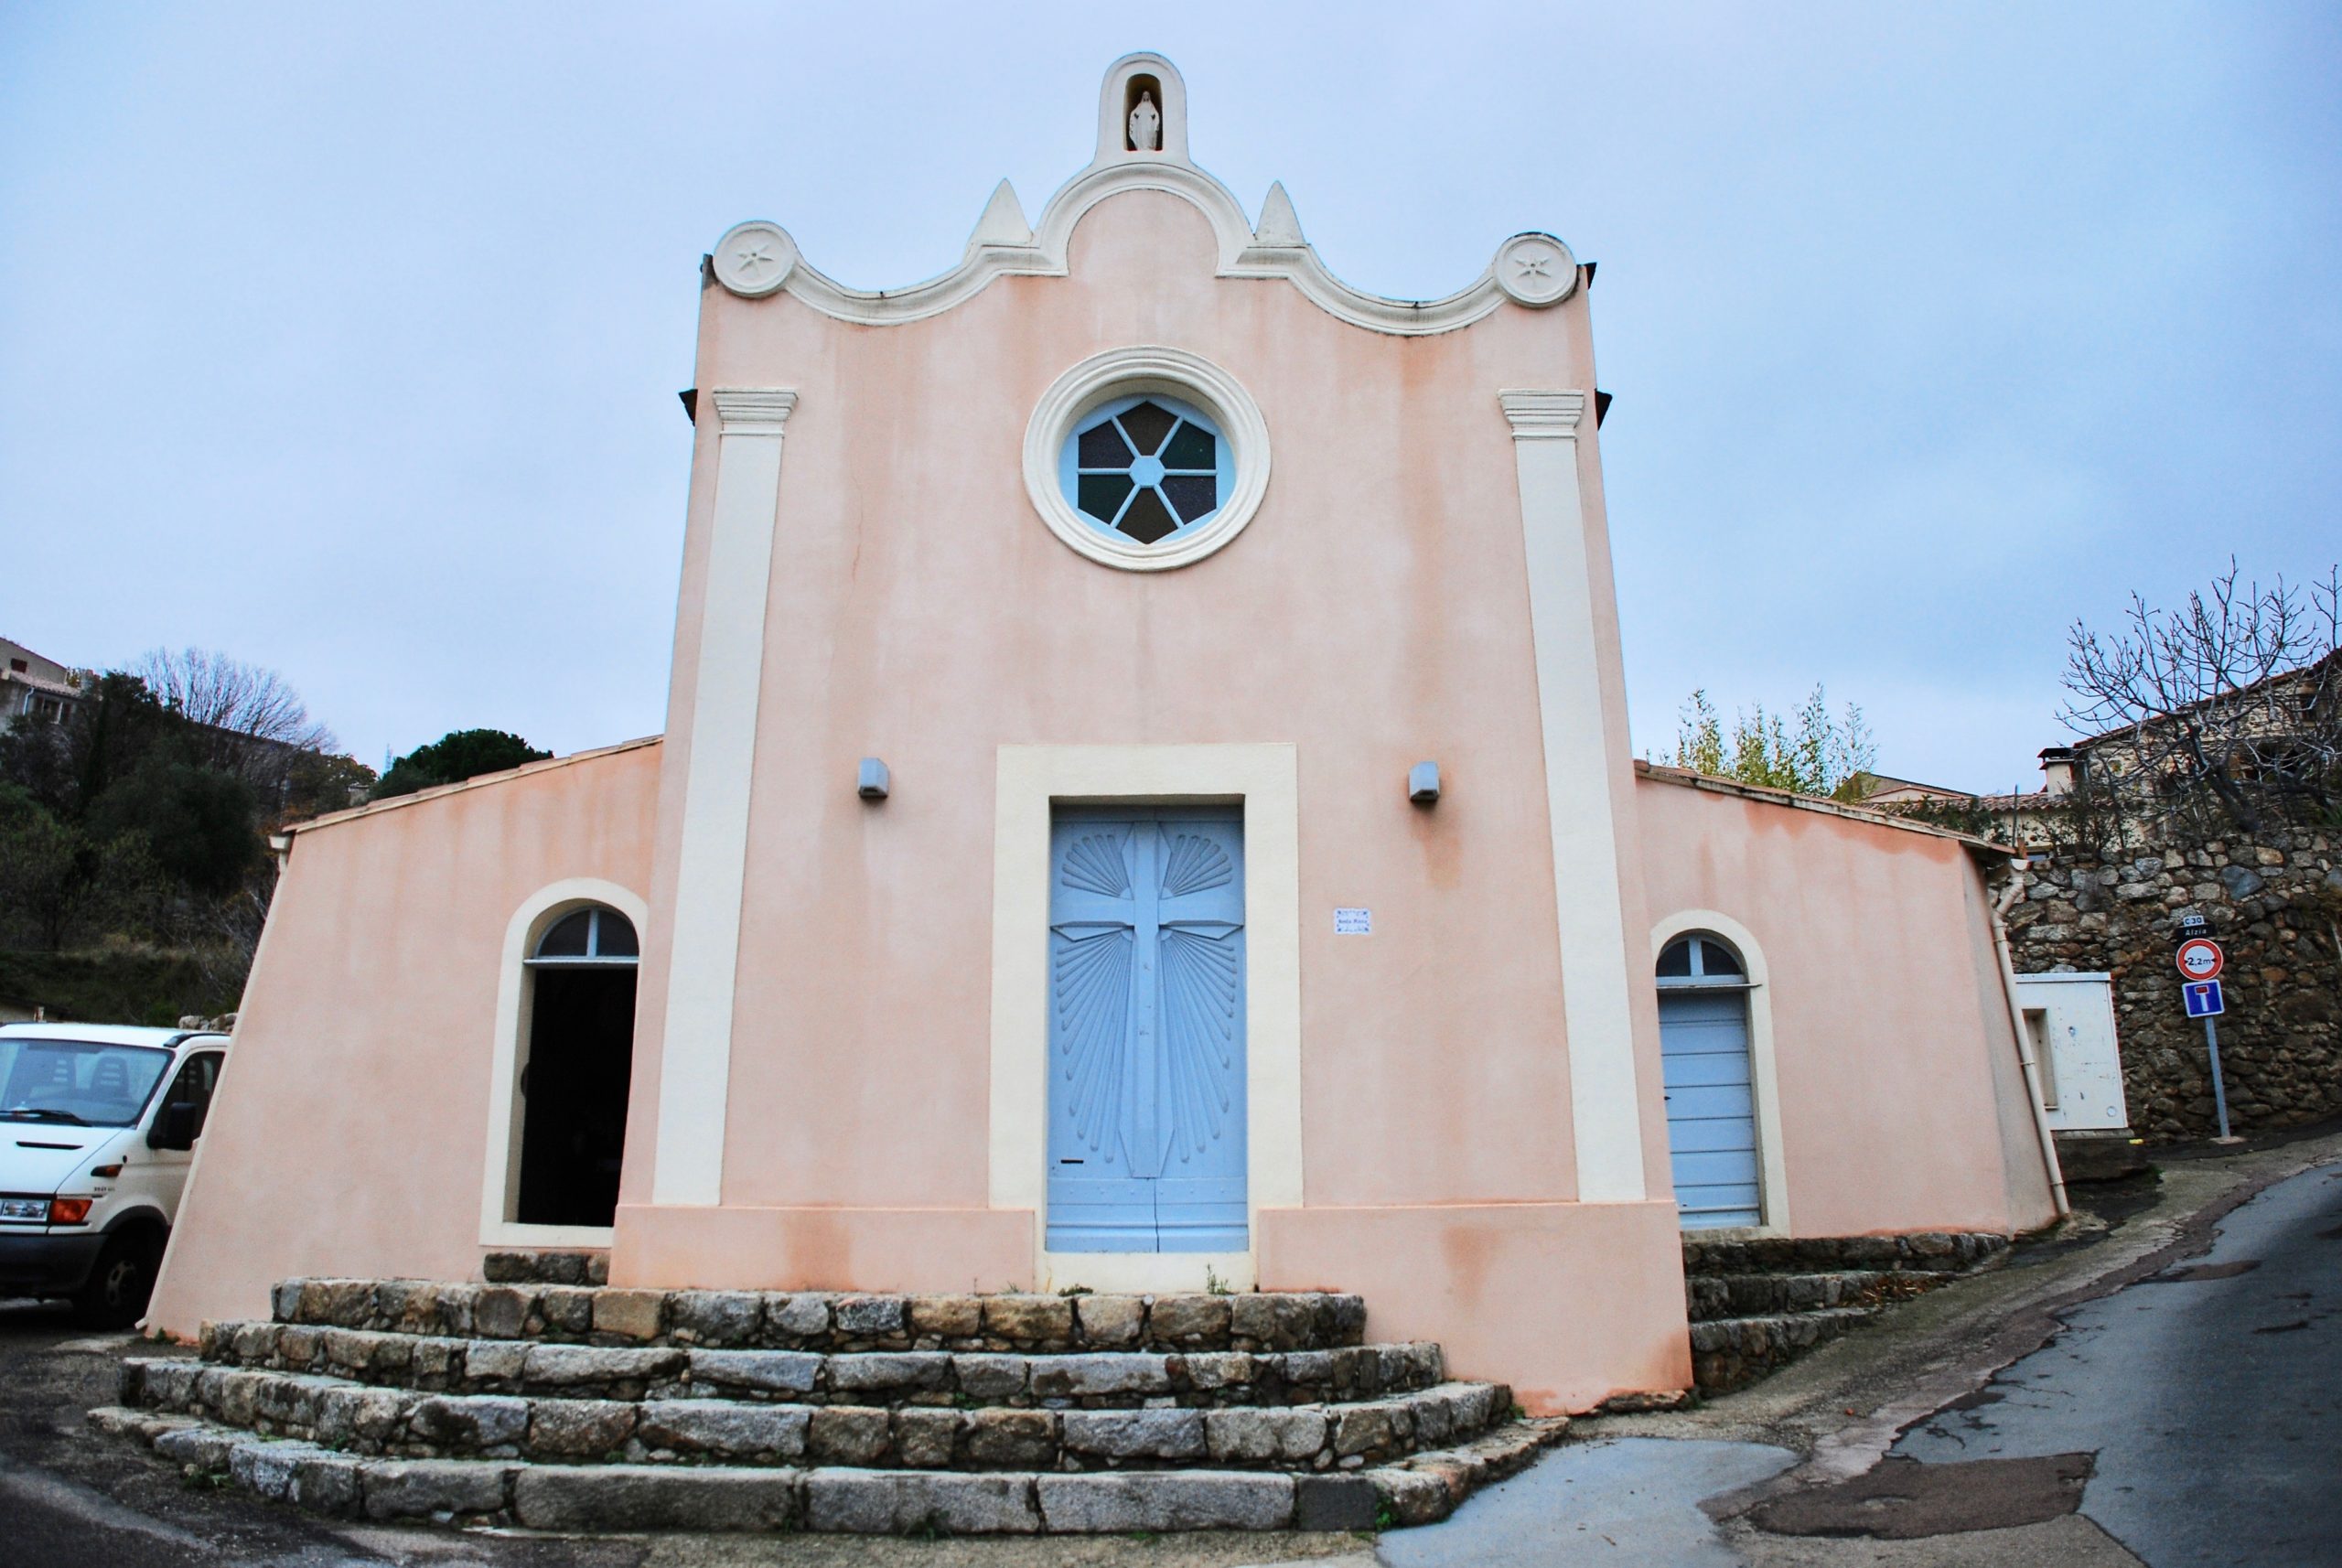 Capella Santa Maria